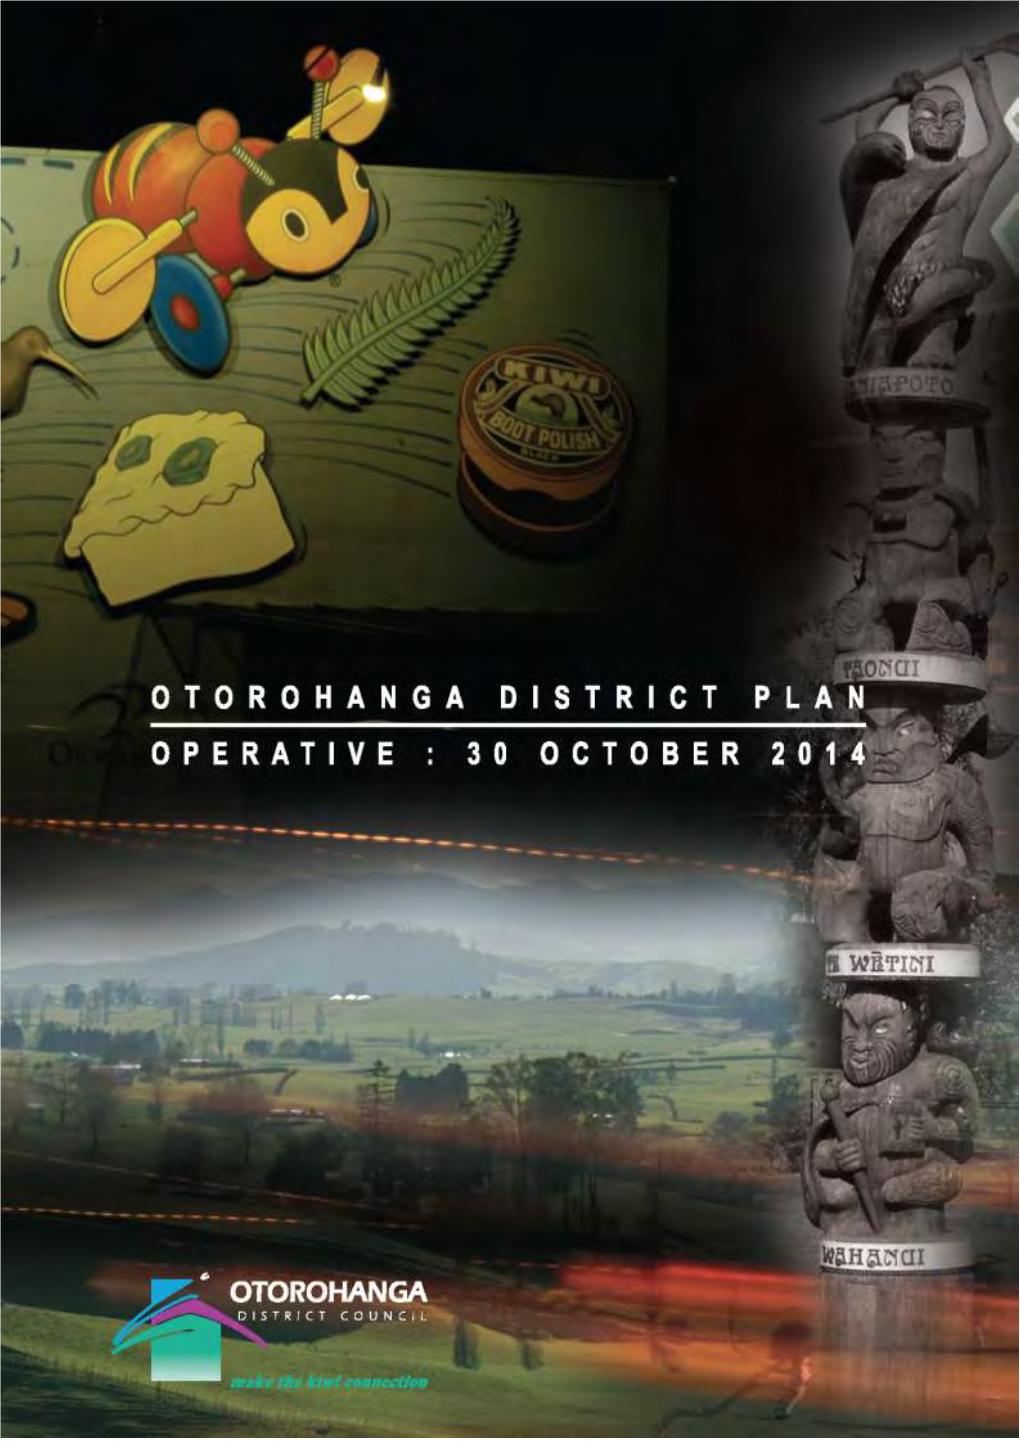 Otorohanga District Plan: 30 October 2014